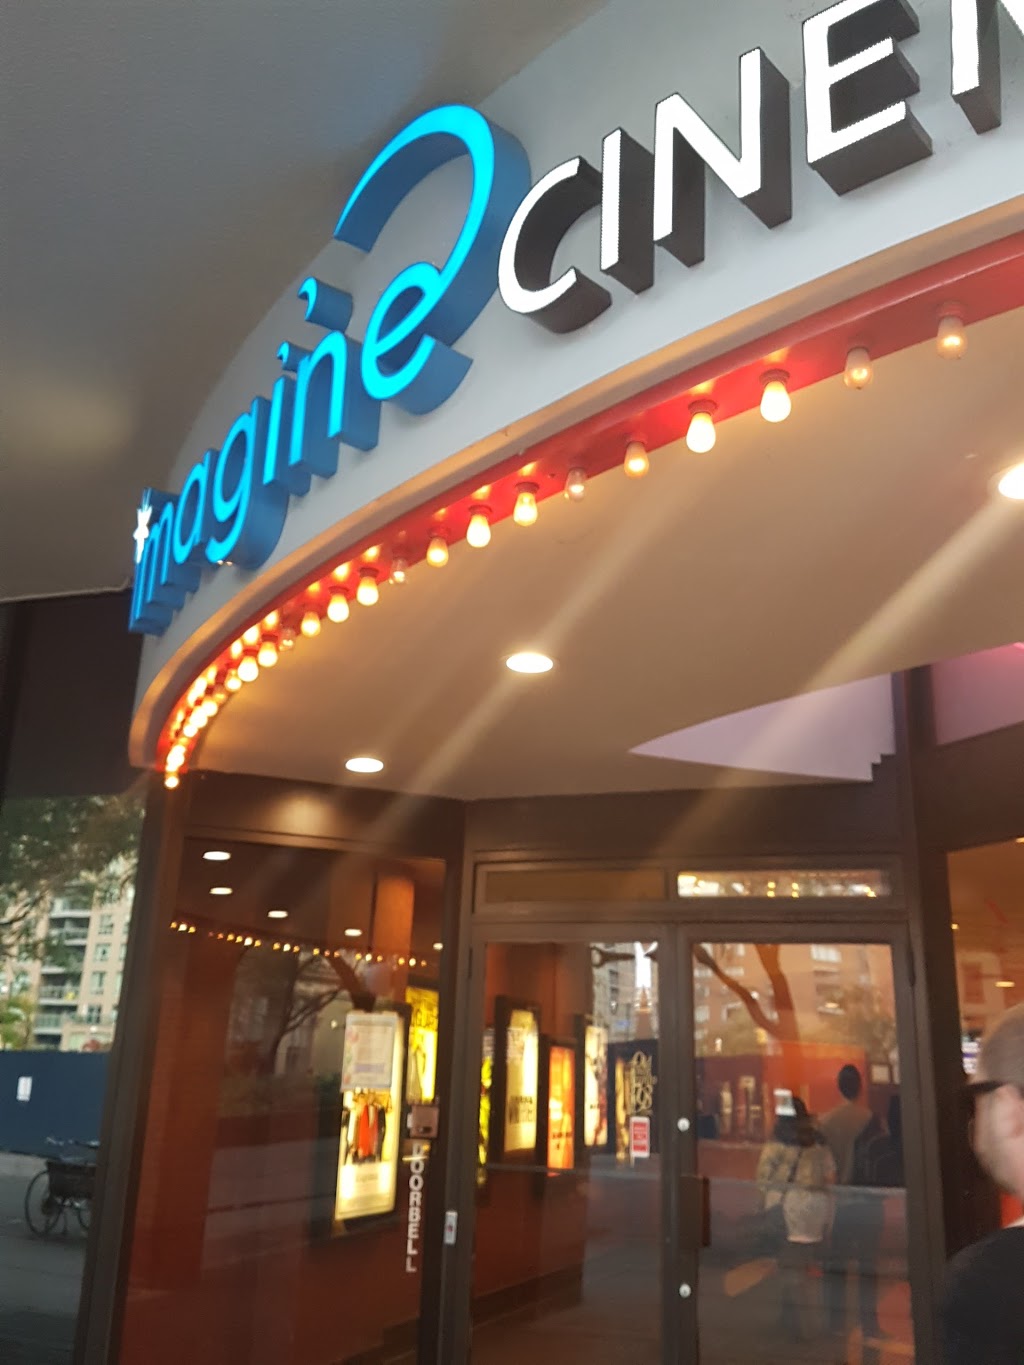 Imagine Cinemas Market Square | movie theater | 80 Front St E, Toronto, ON M5E 1T4, Canada | 4162147006 OR +1 416-214-7006